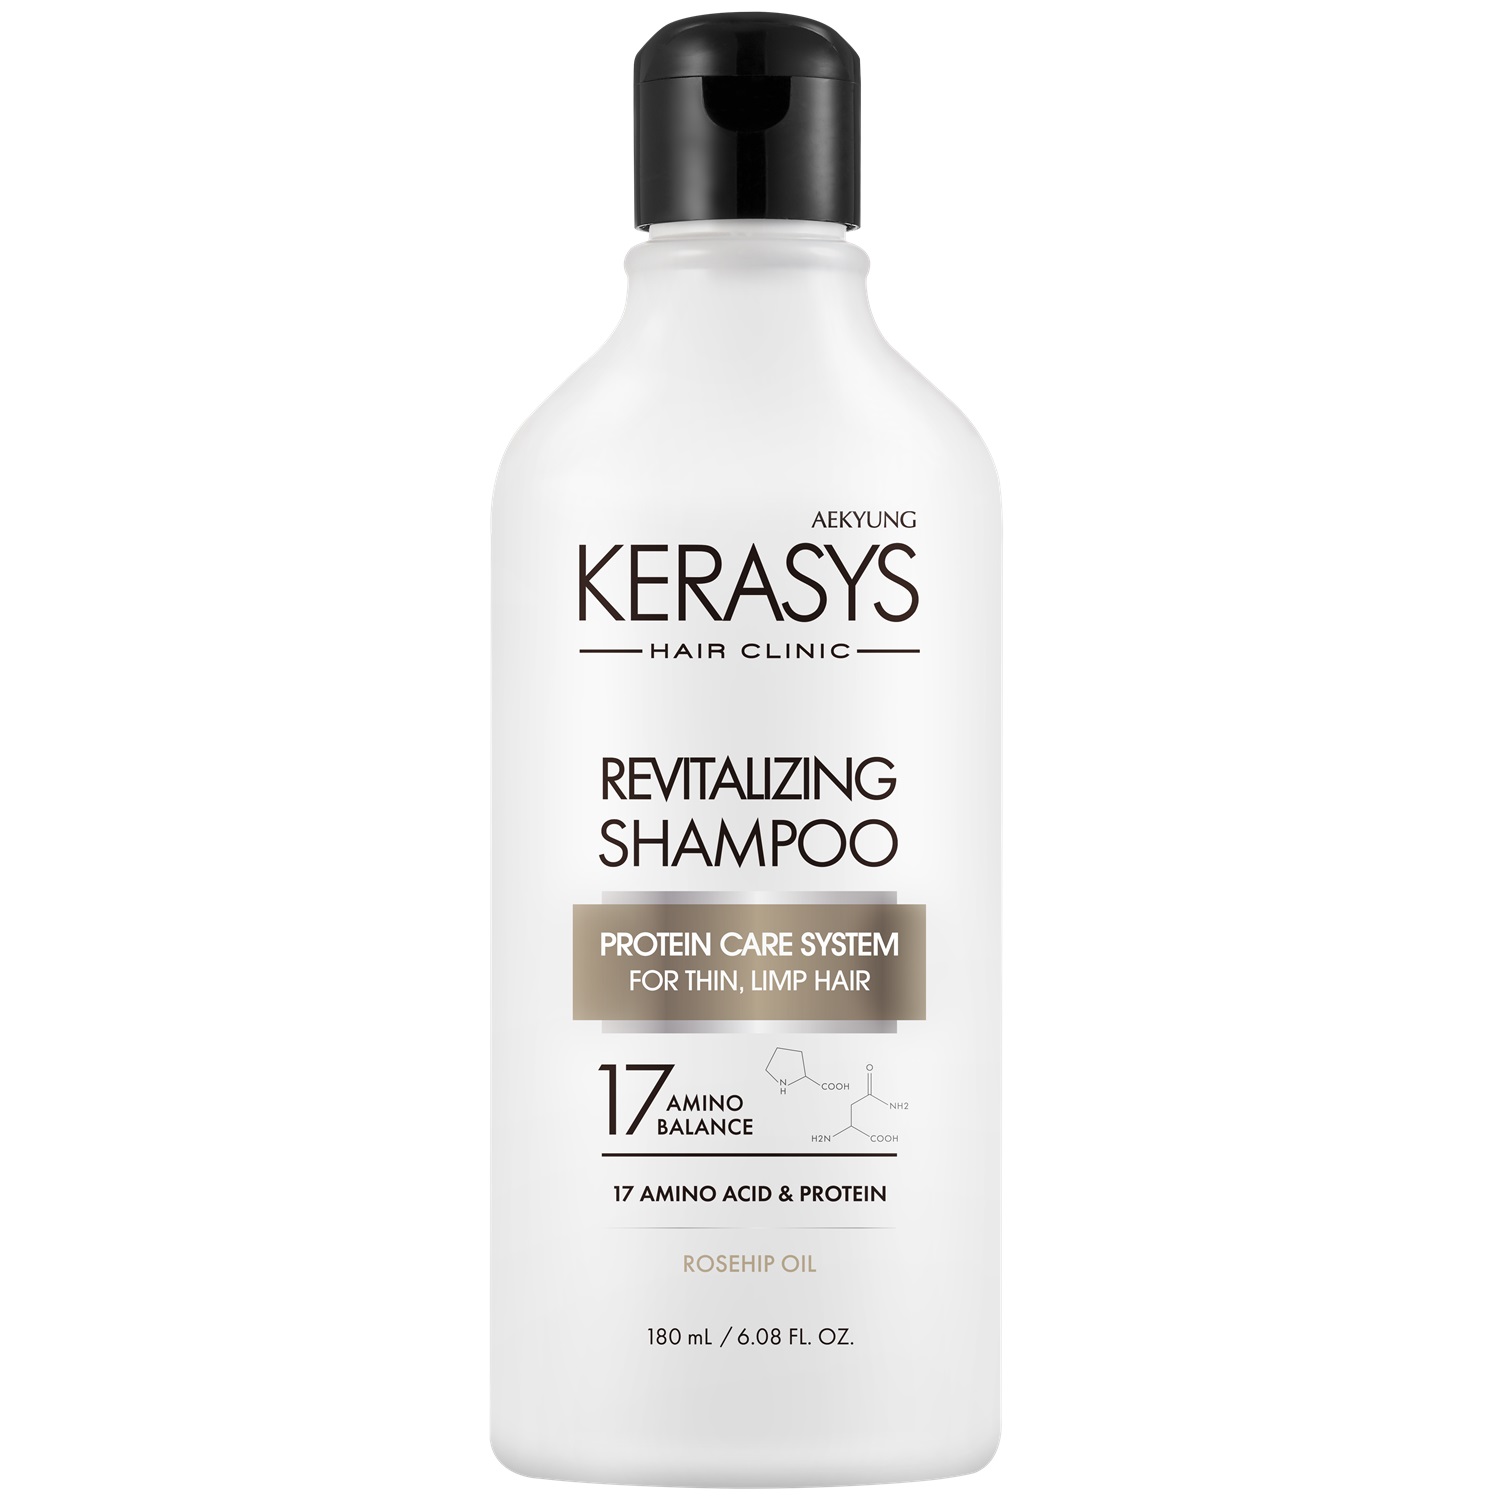 Kerasys Шампунь оздоравливающий для волос, 180 мл (Kerasys, Hair Clinic) шампунь для волос kerasys оздоравливающий 180 мл